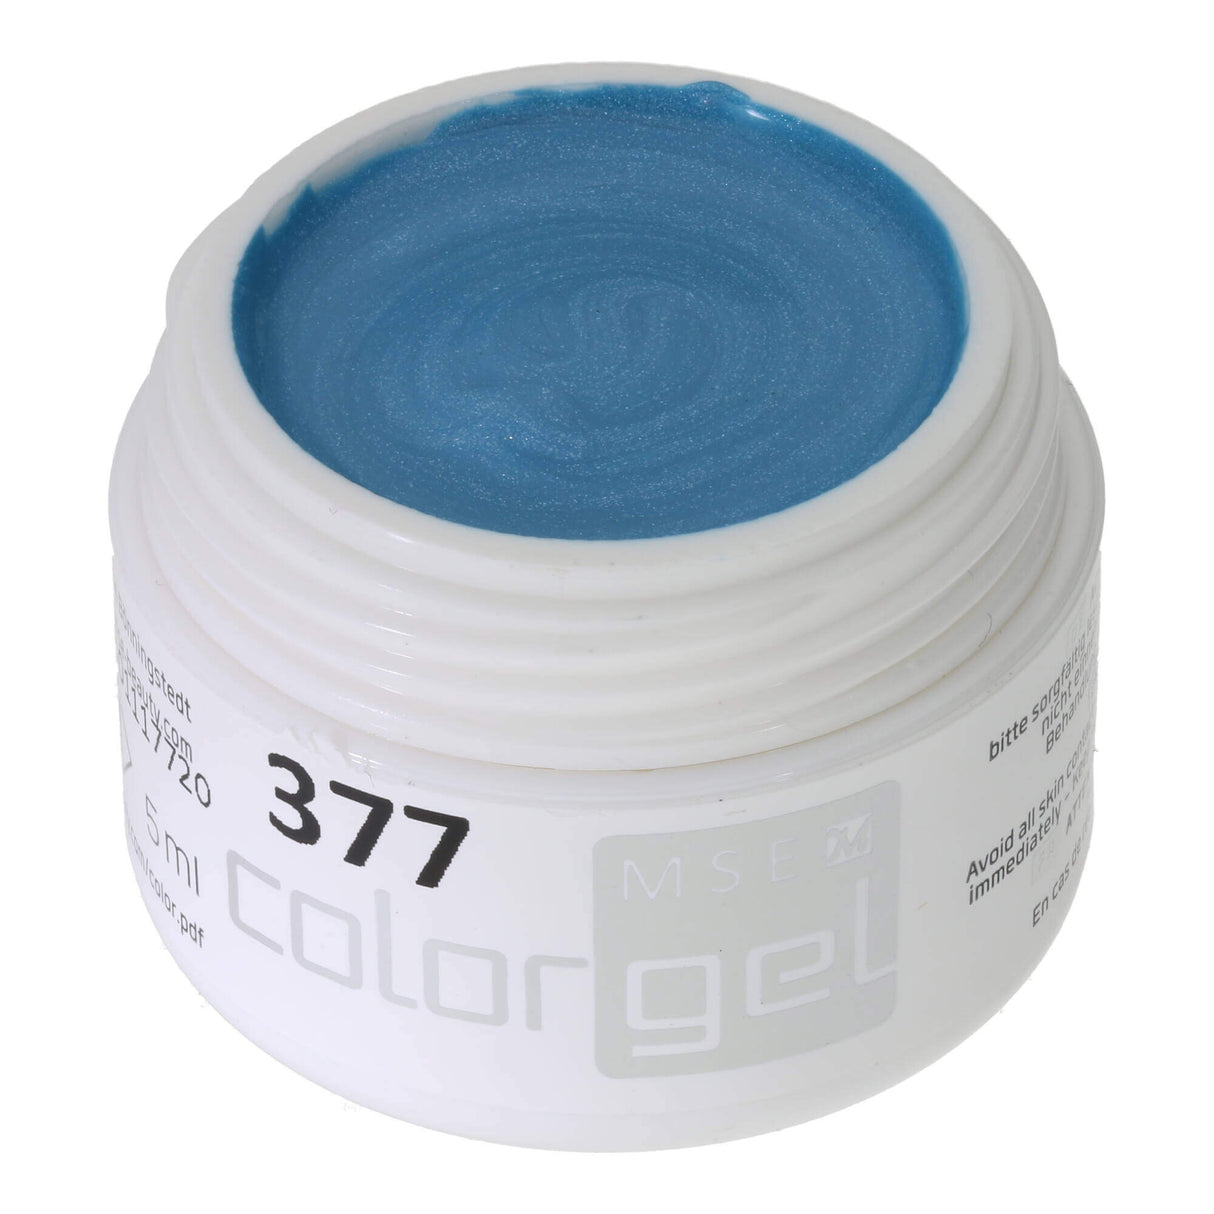 # 377 Premium-EFFEKT Color Gel 5ml Sac moyen avec un chatoiement subtil